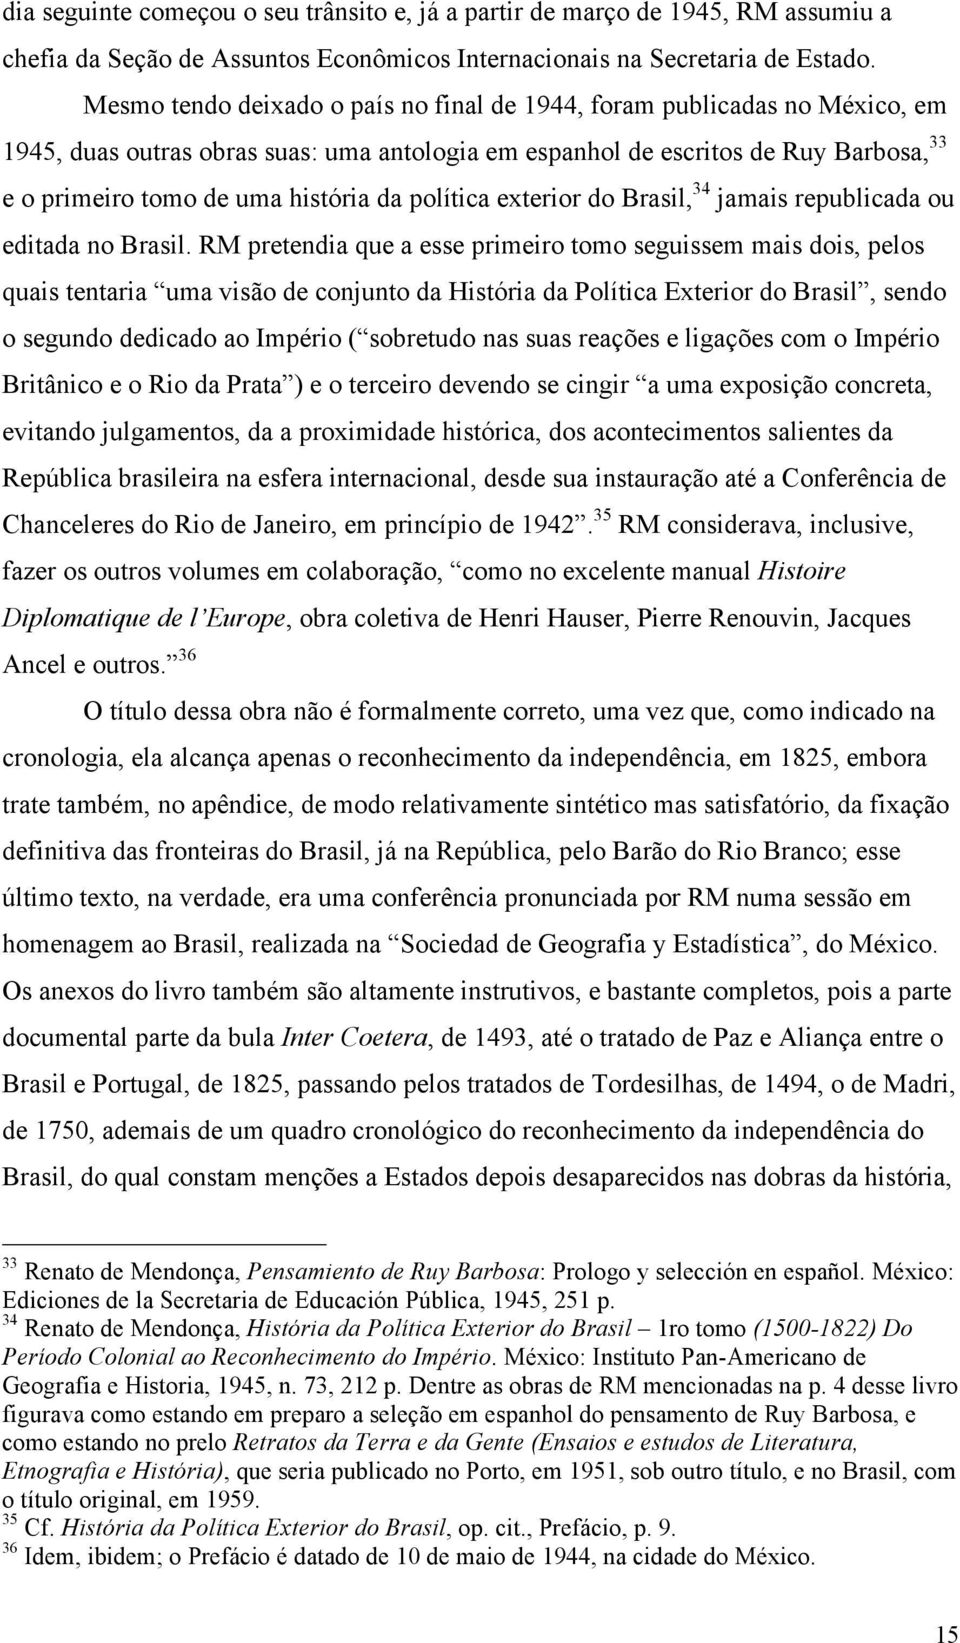 política exterior do Brasil, 34 jamais republicada ou editada no Brasil.